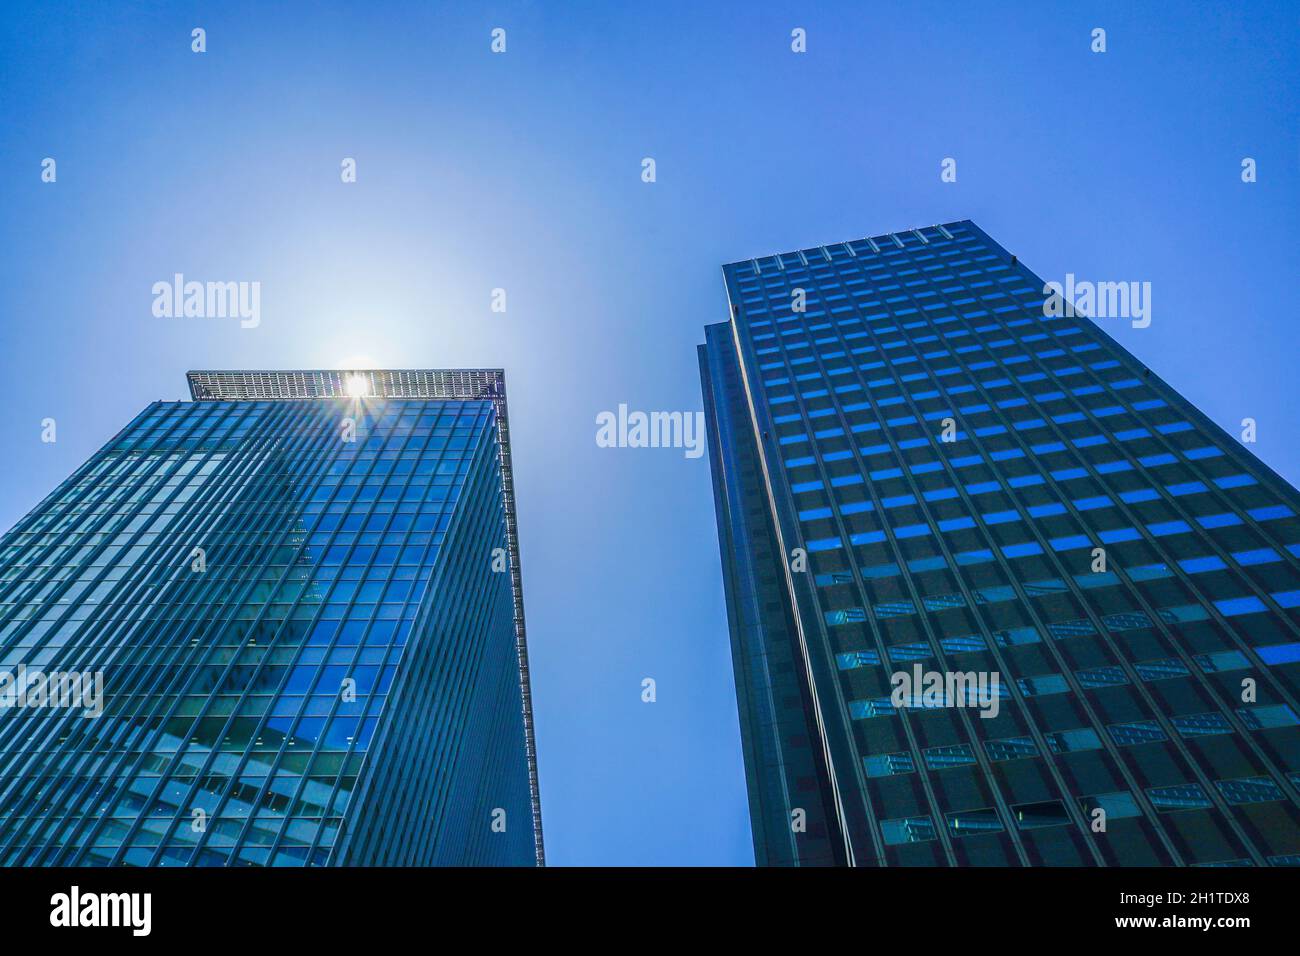 Image of Tokyo skyscraper. Shooting Location: Tokyo metropolitan area Stock Photo